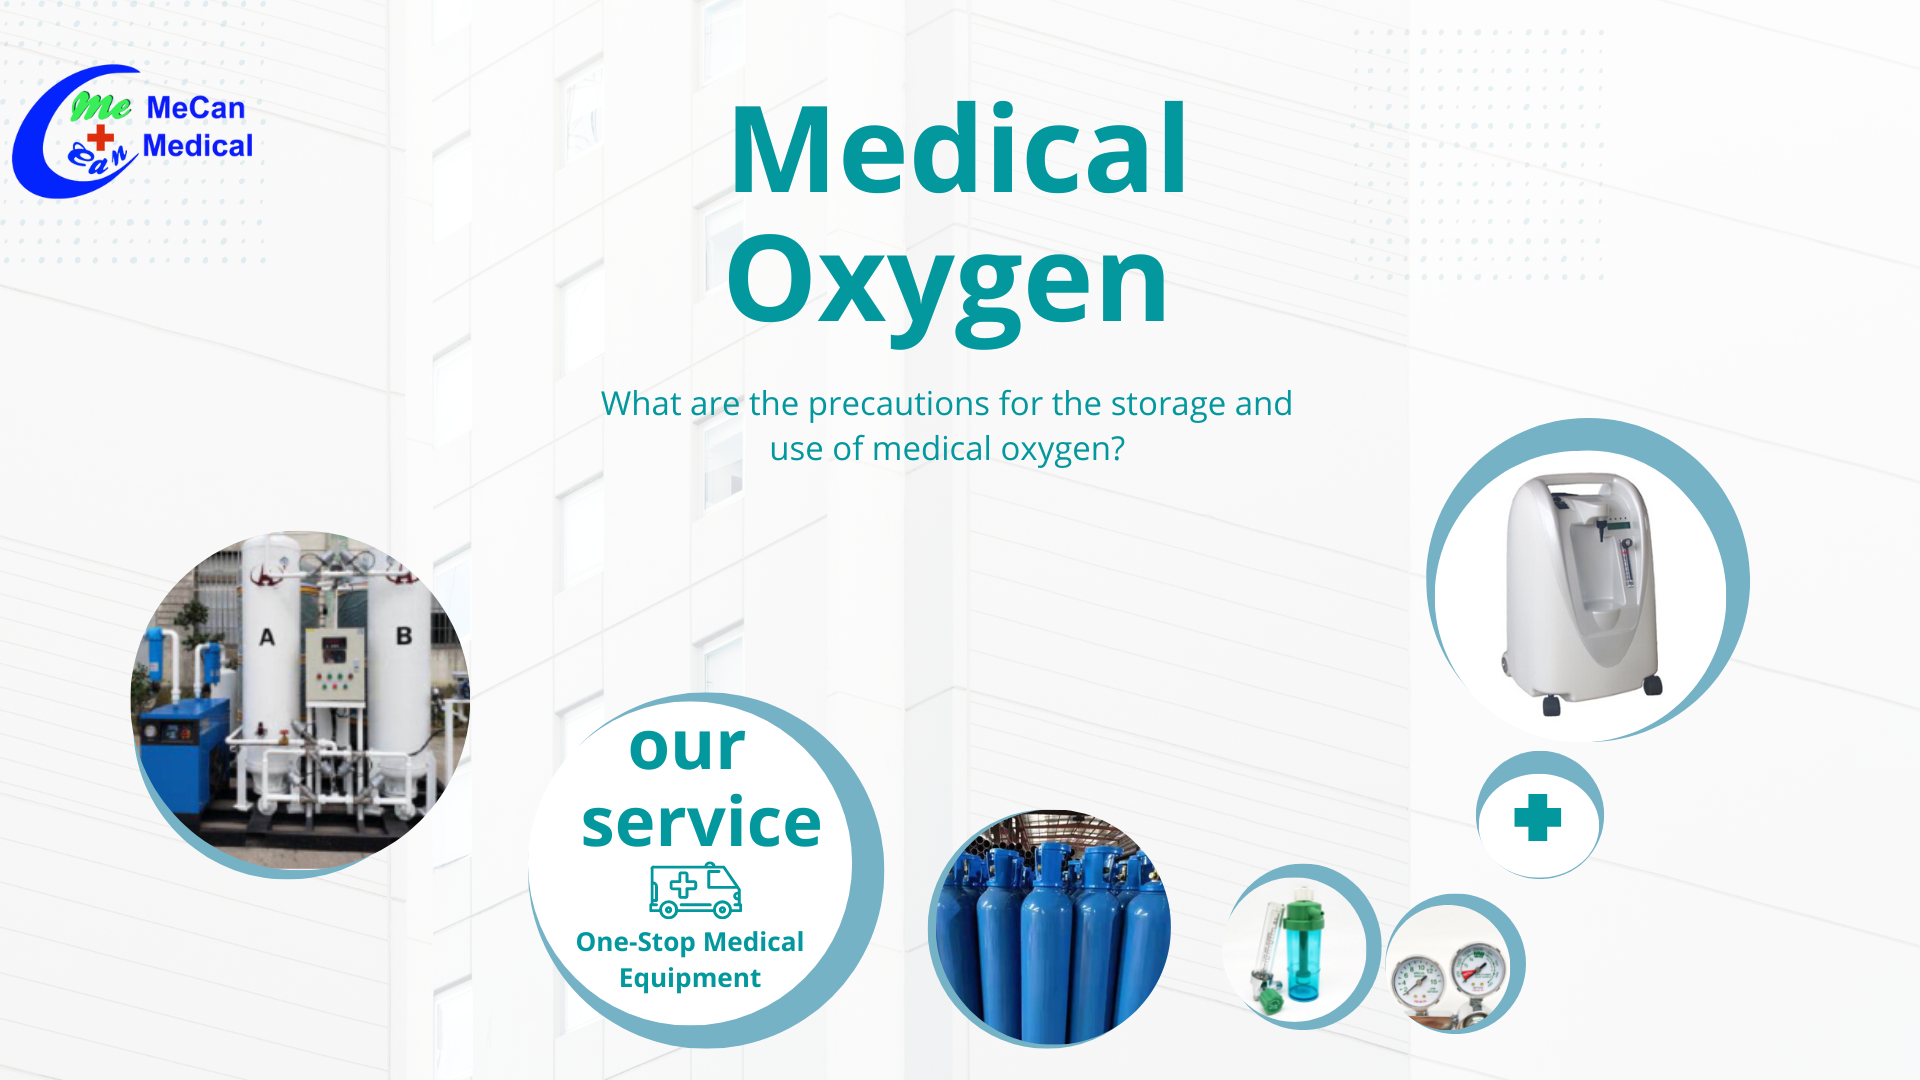 اقدامات احتیاطی برای ذخیره و استفاده از اکسیژن پزشکی چیست؟